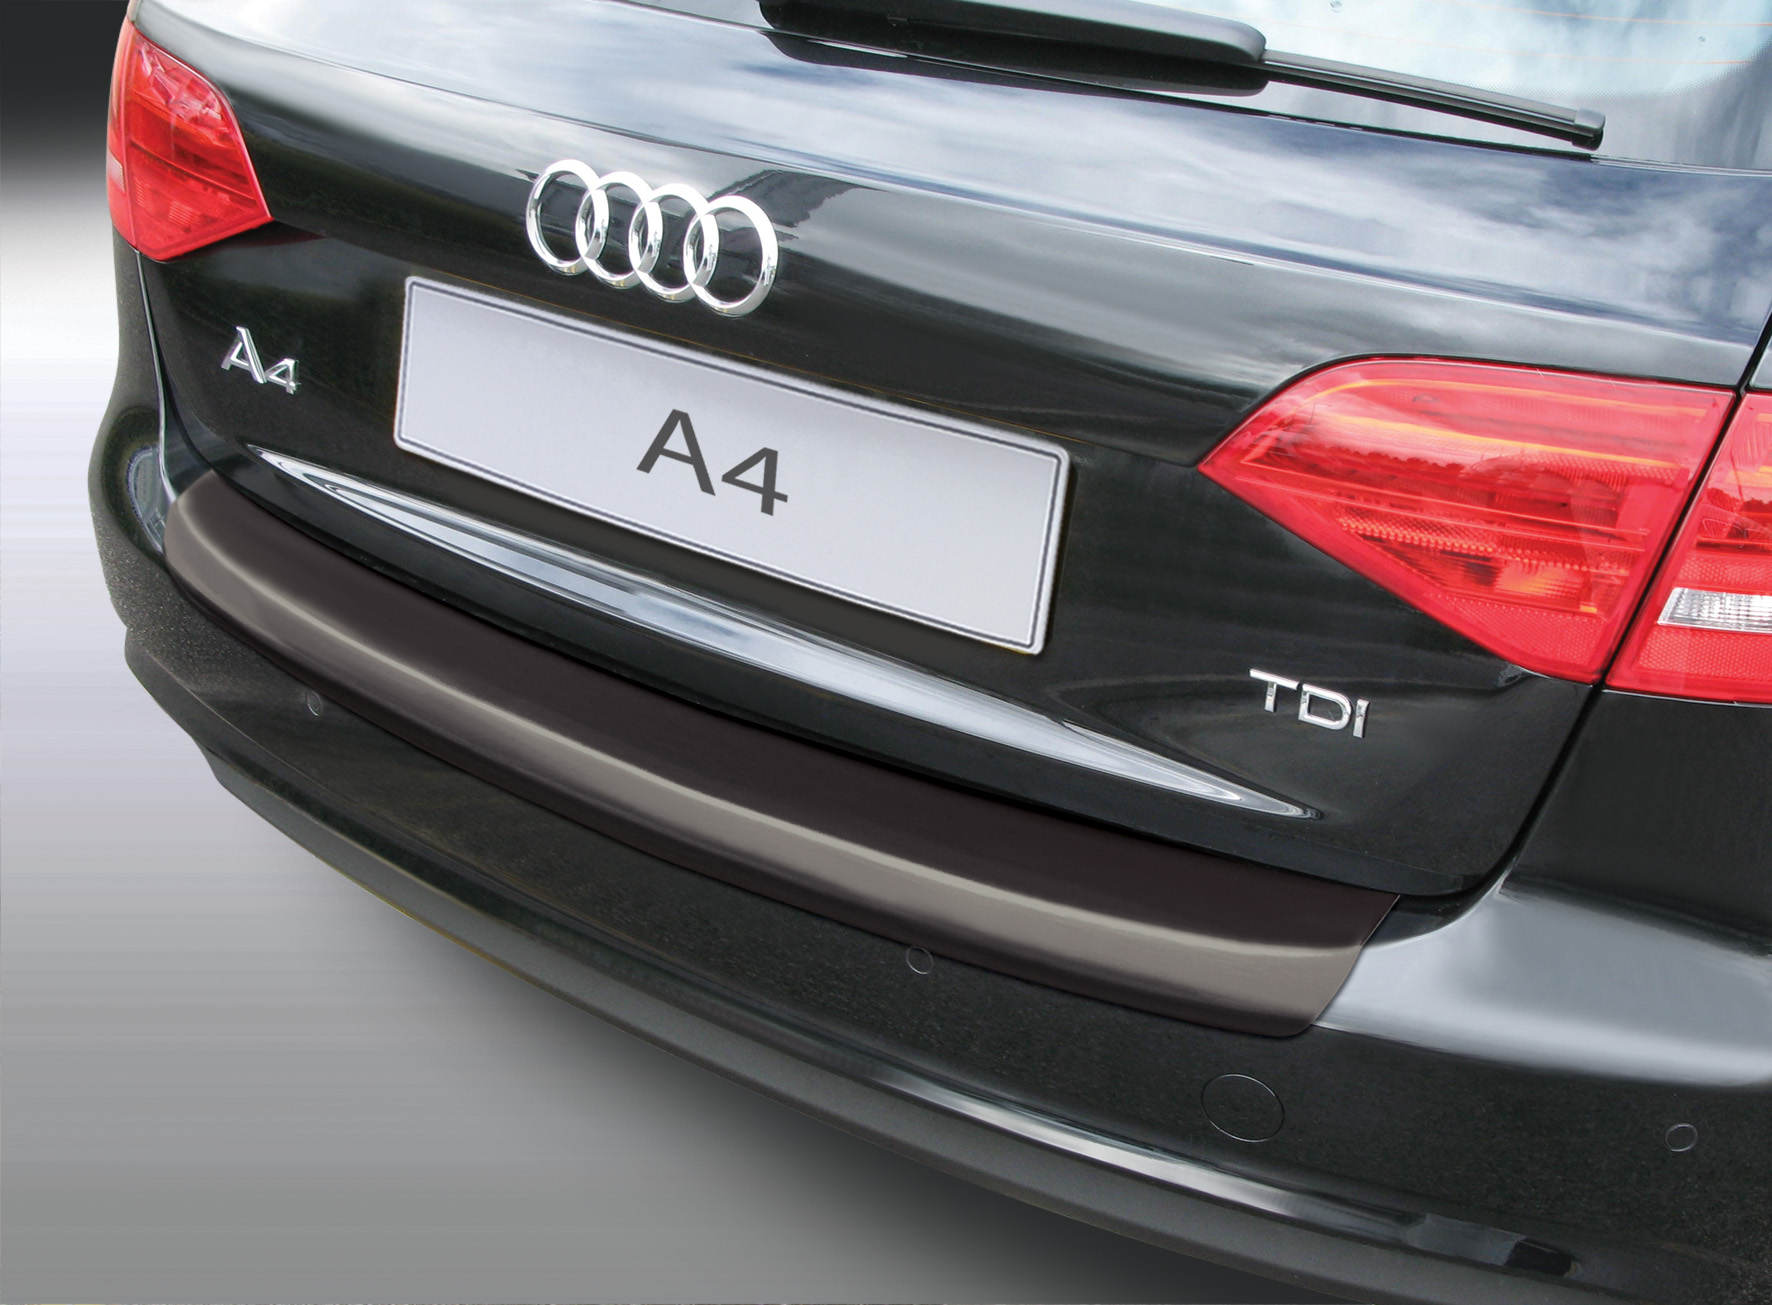 Ladekantenschutz mit Abkantung passend für Audi A4 Avant B8 auch